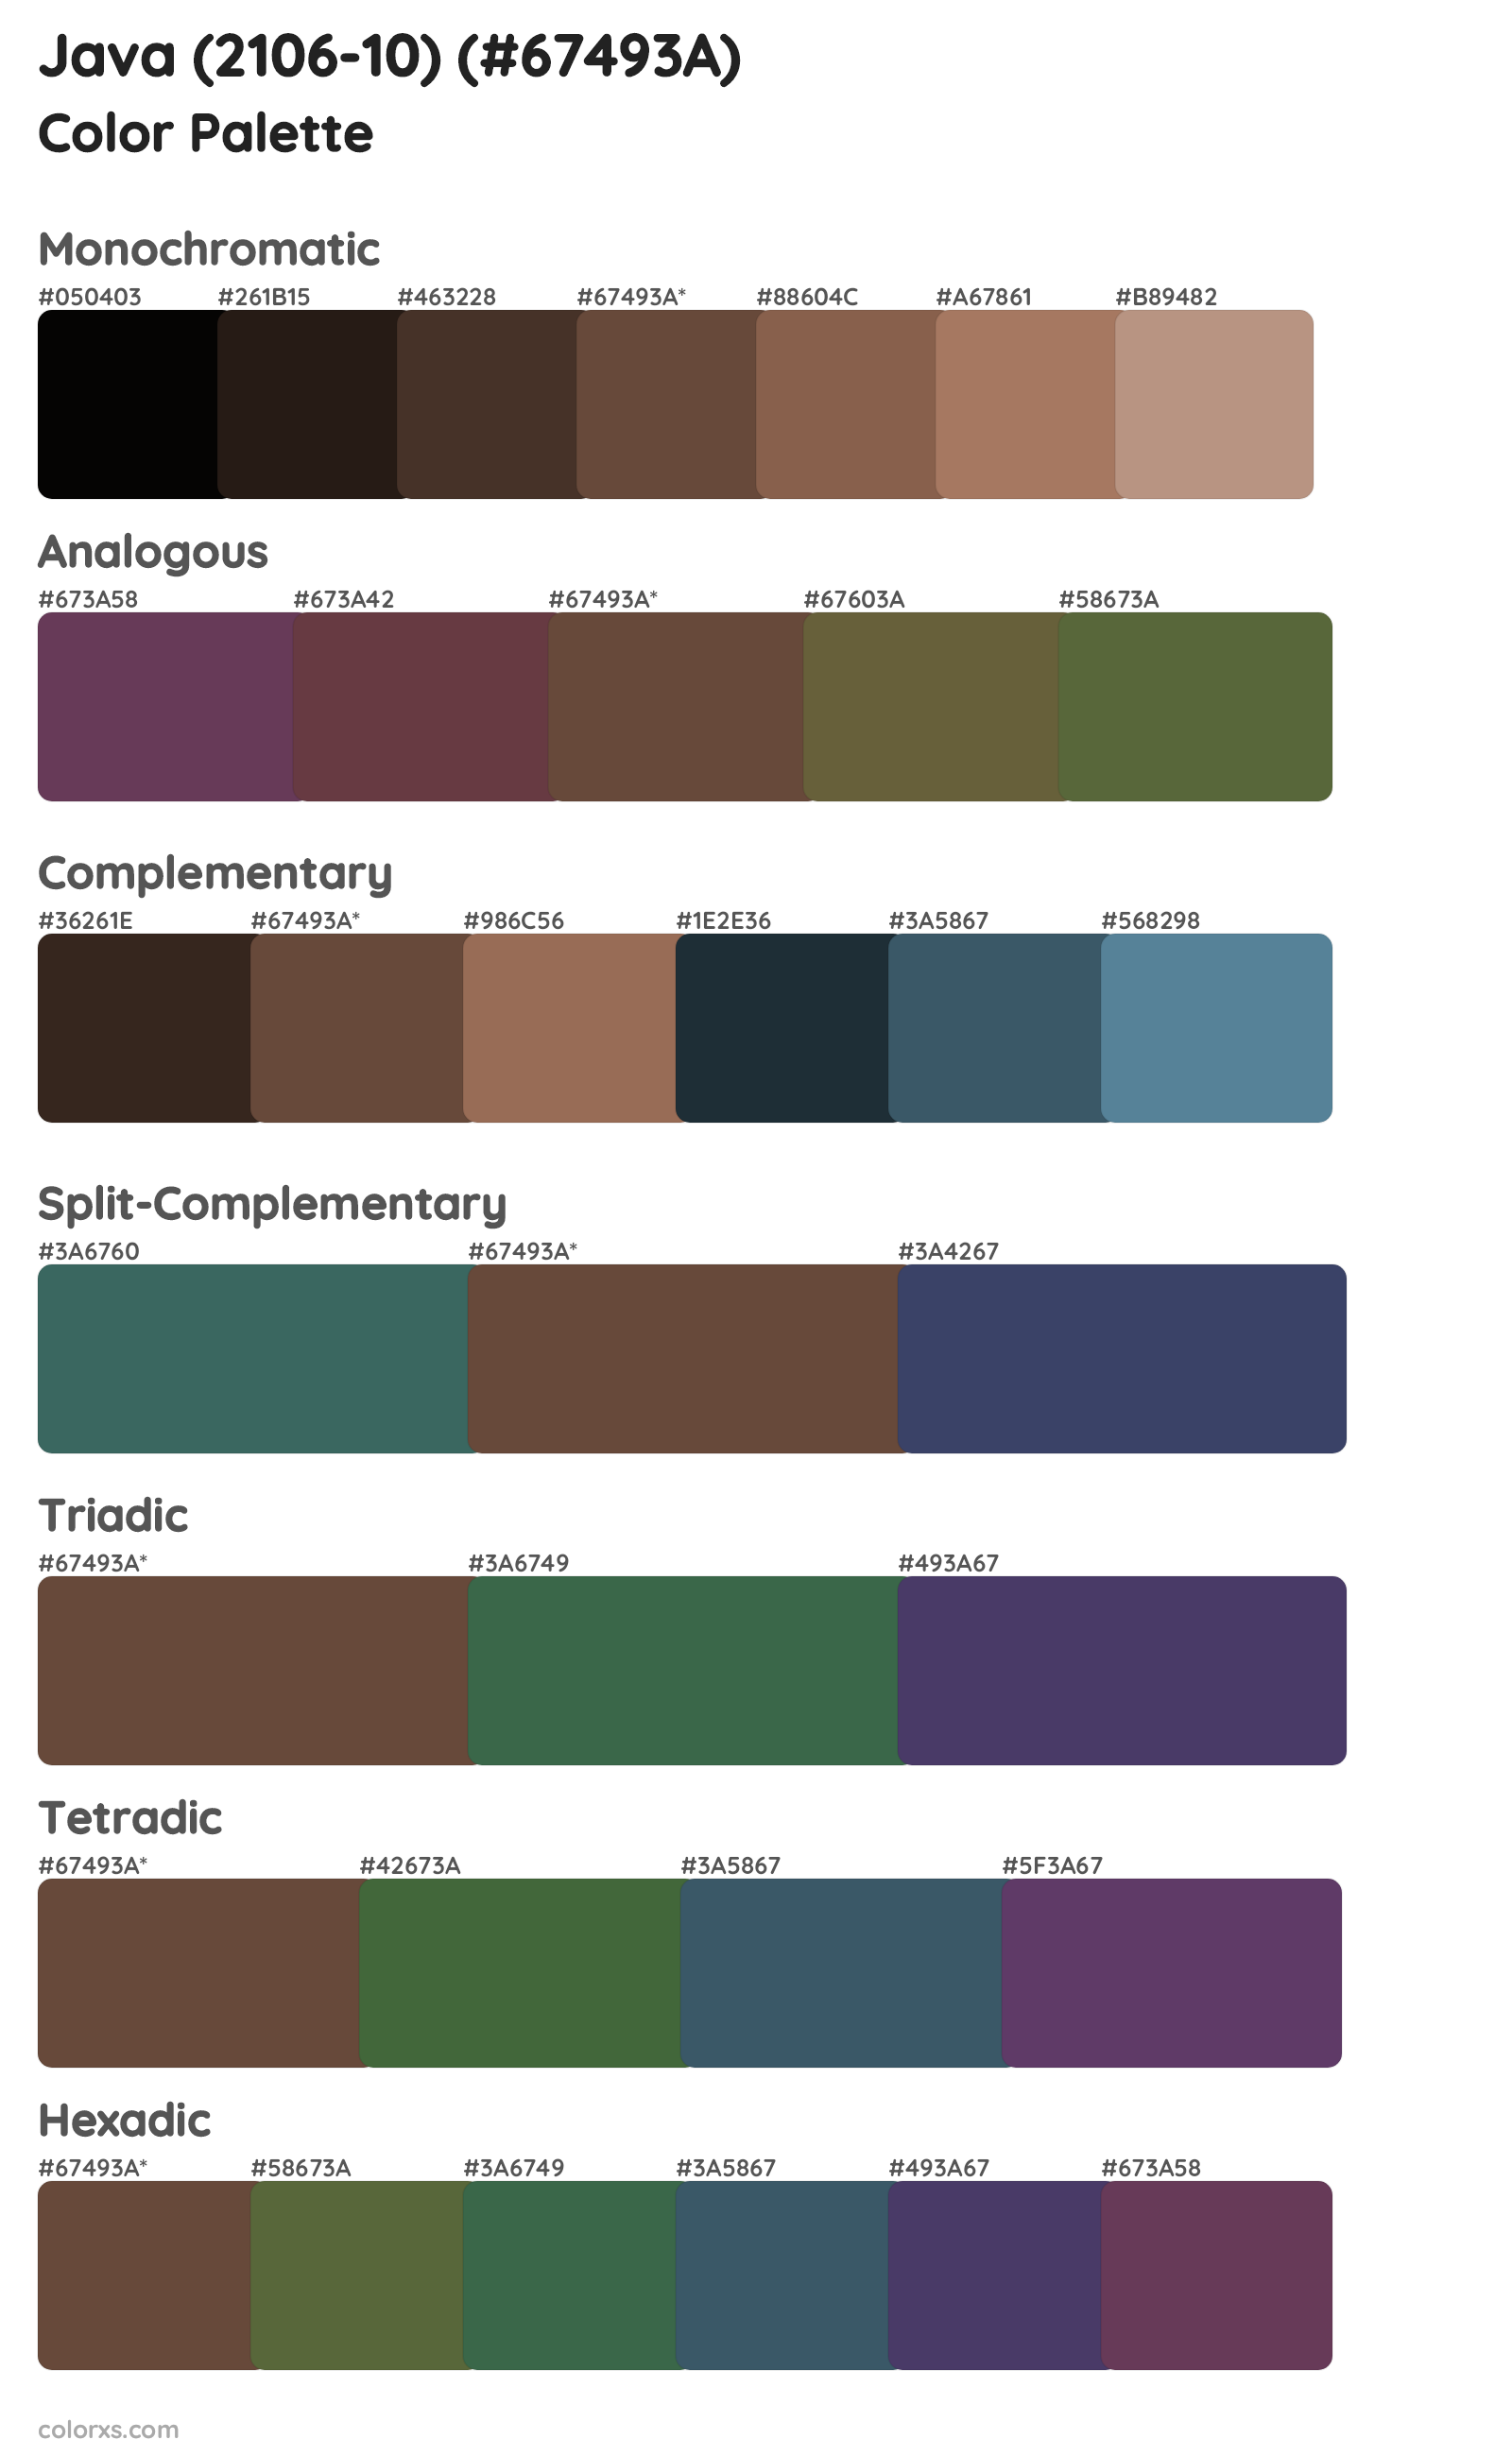 Java (2106-10) Color Scheme Palettes